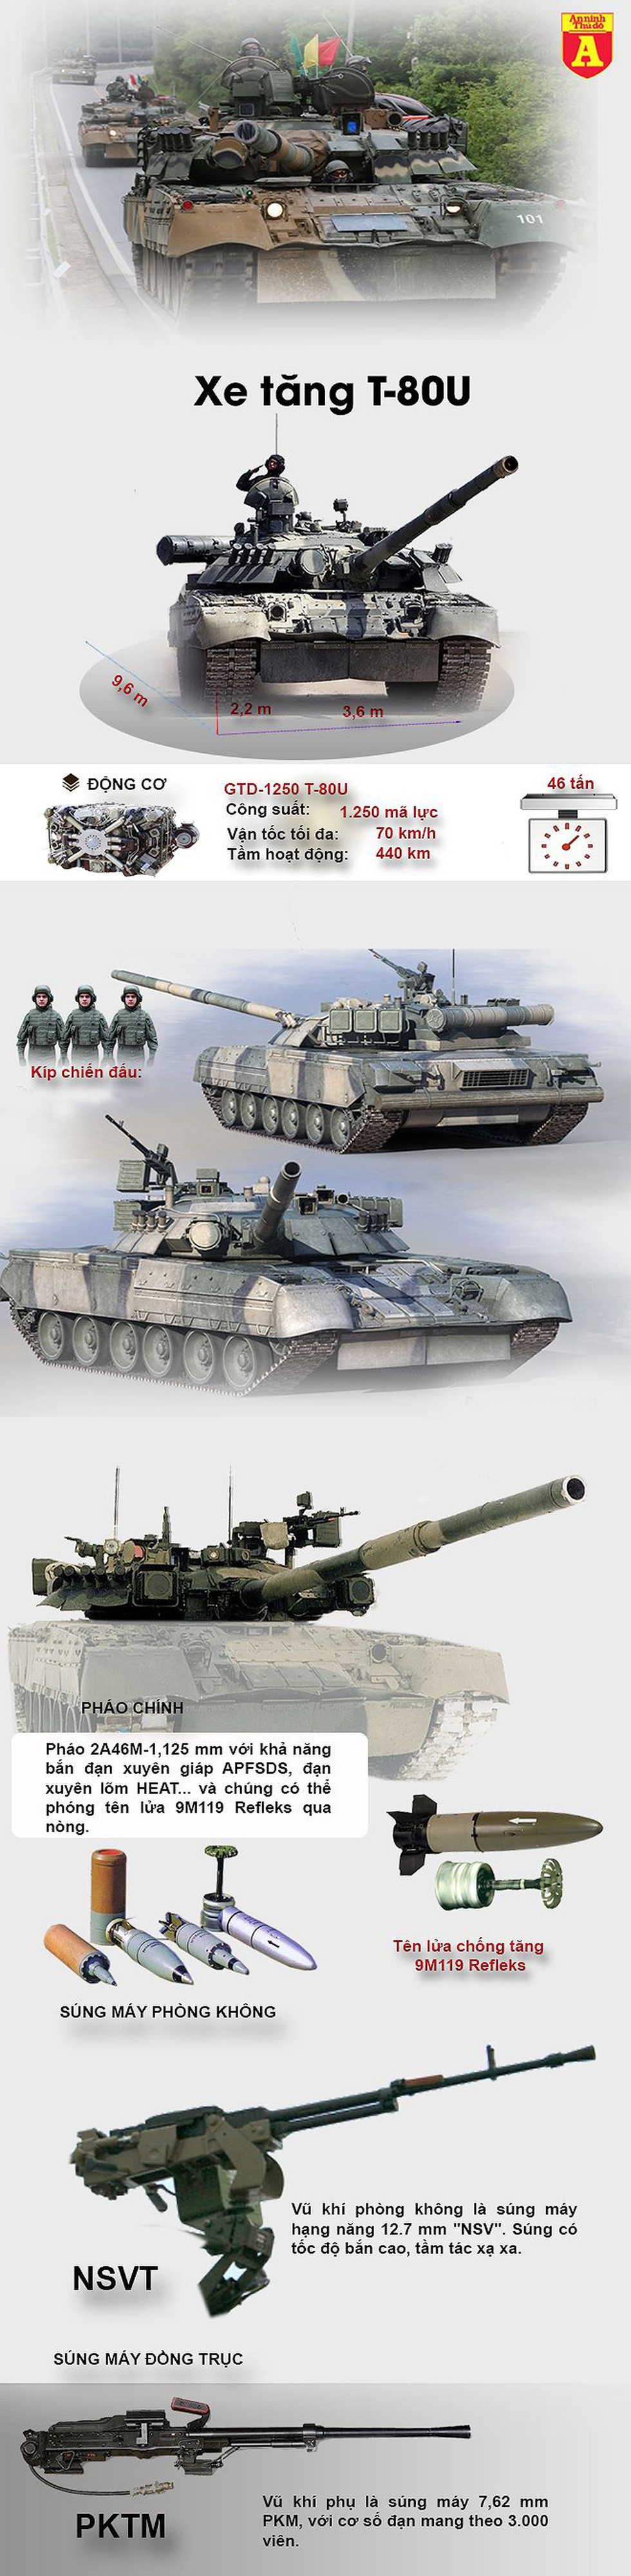 [Infographic] Xuất xứ gán nợ của siêu tăng T-80U Nga mà lính Mỹ vừa lái - Ảnh 1